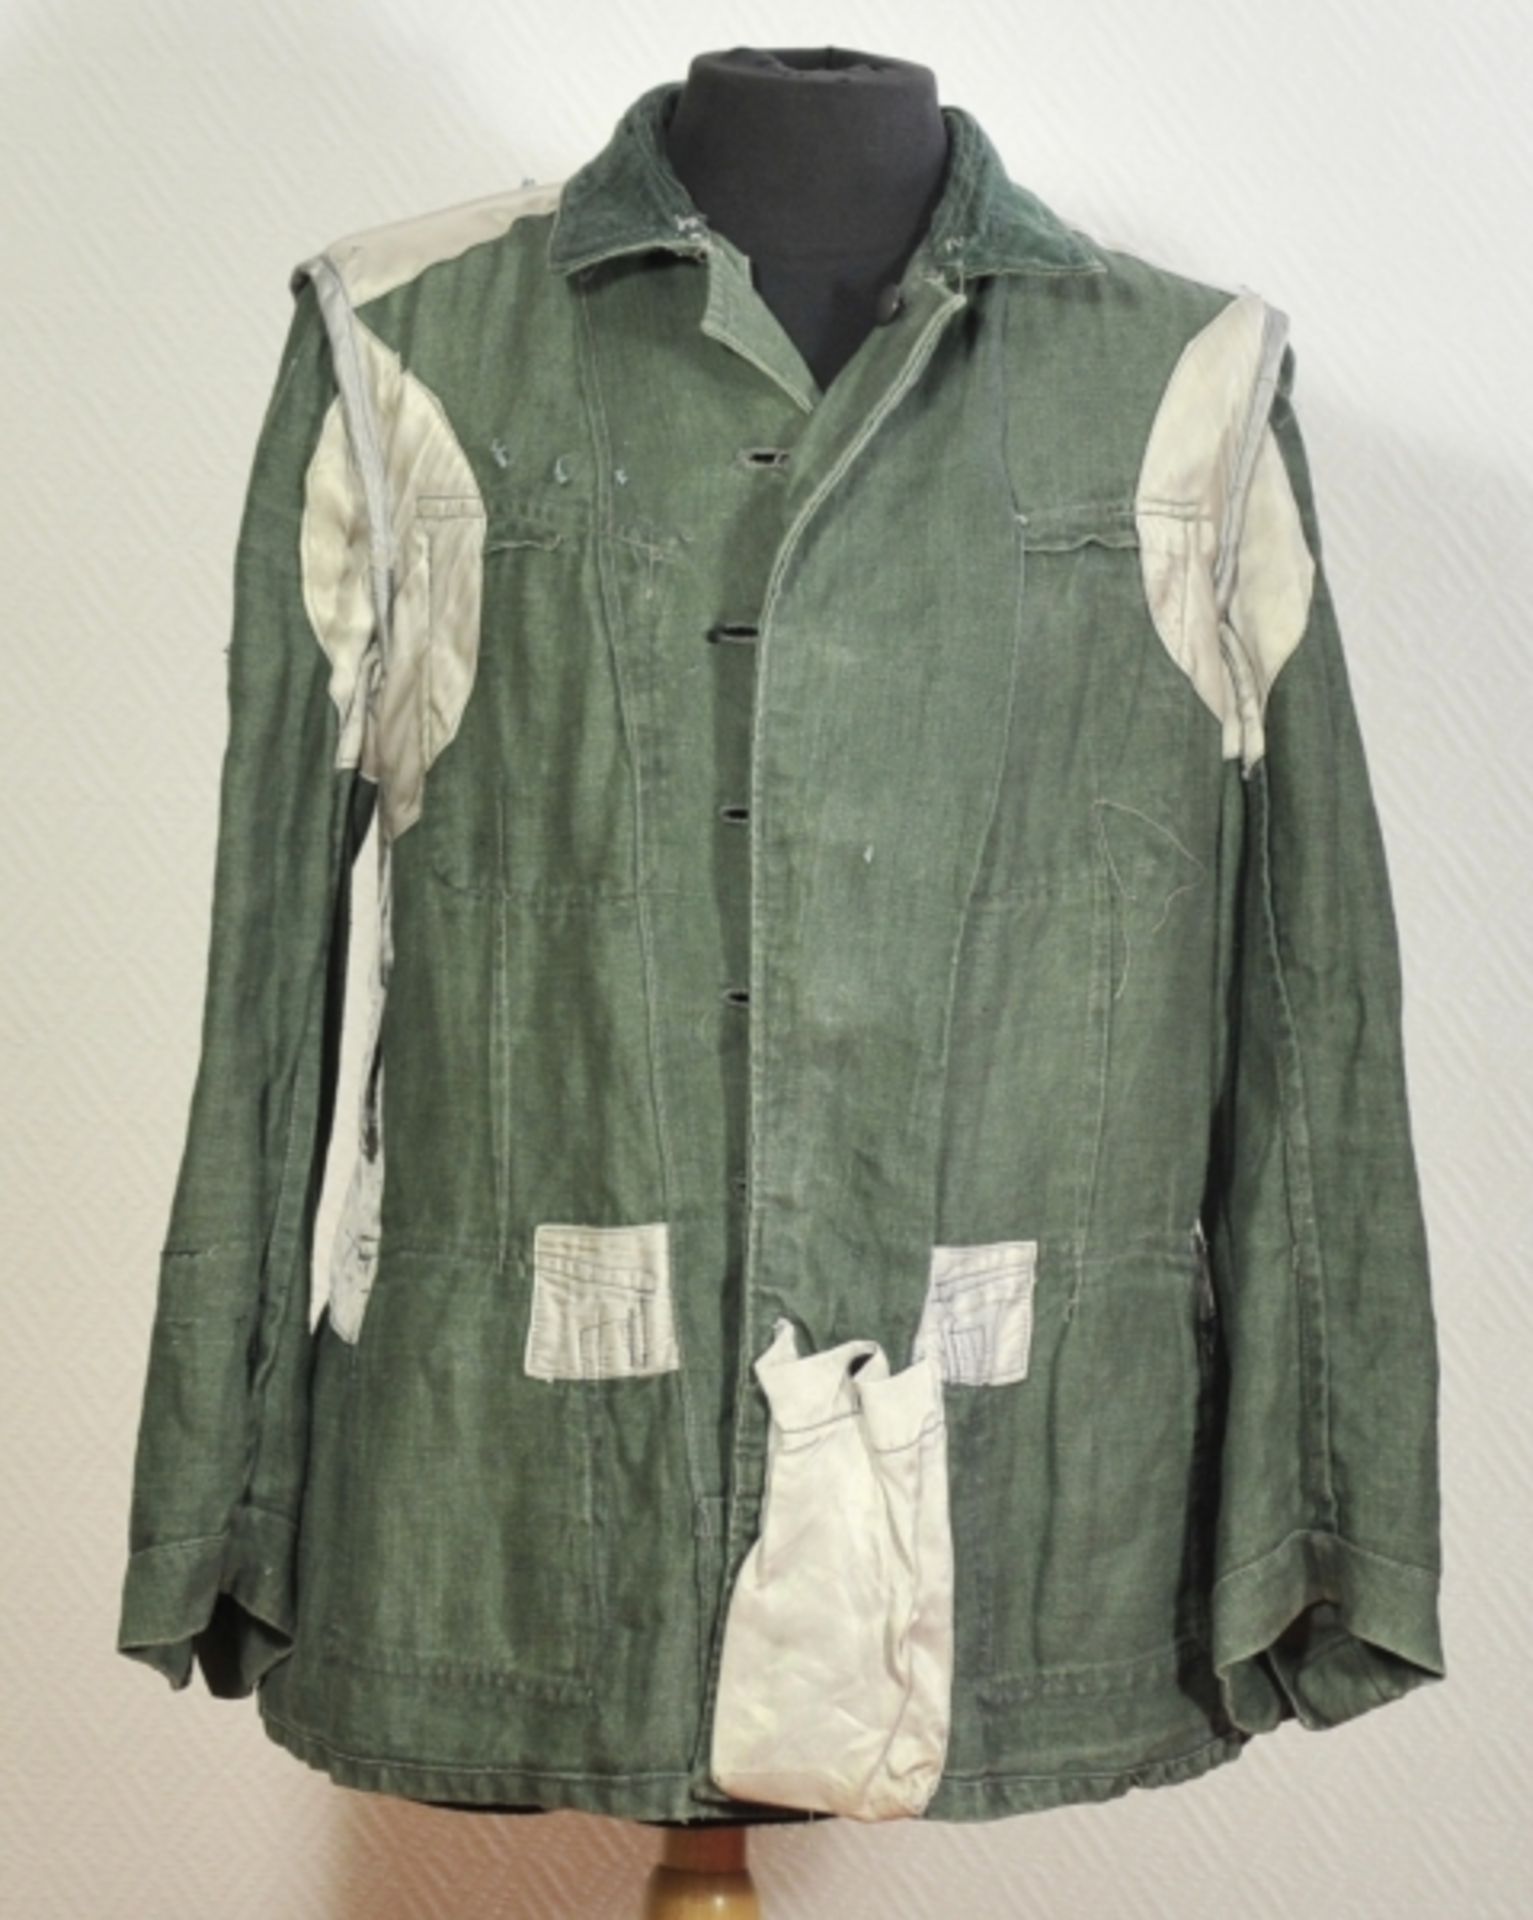 Feldbluse der Wehrmacht.Grünes Tuch, Fischgrätmuster, graue Knöpfe, mit zwei Koppelhaken, die - Image 4 of 5